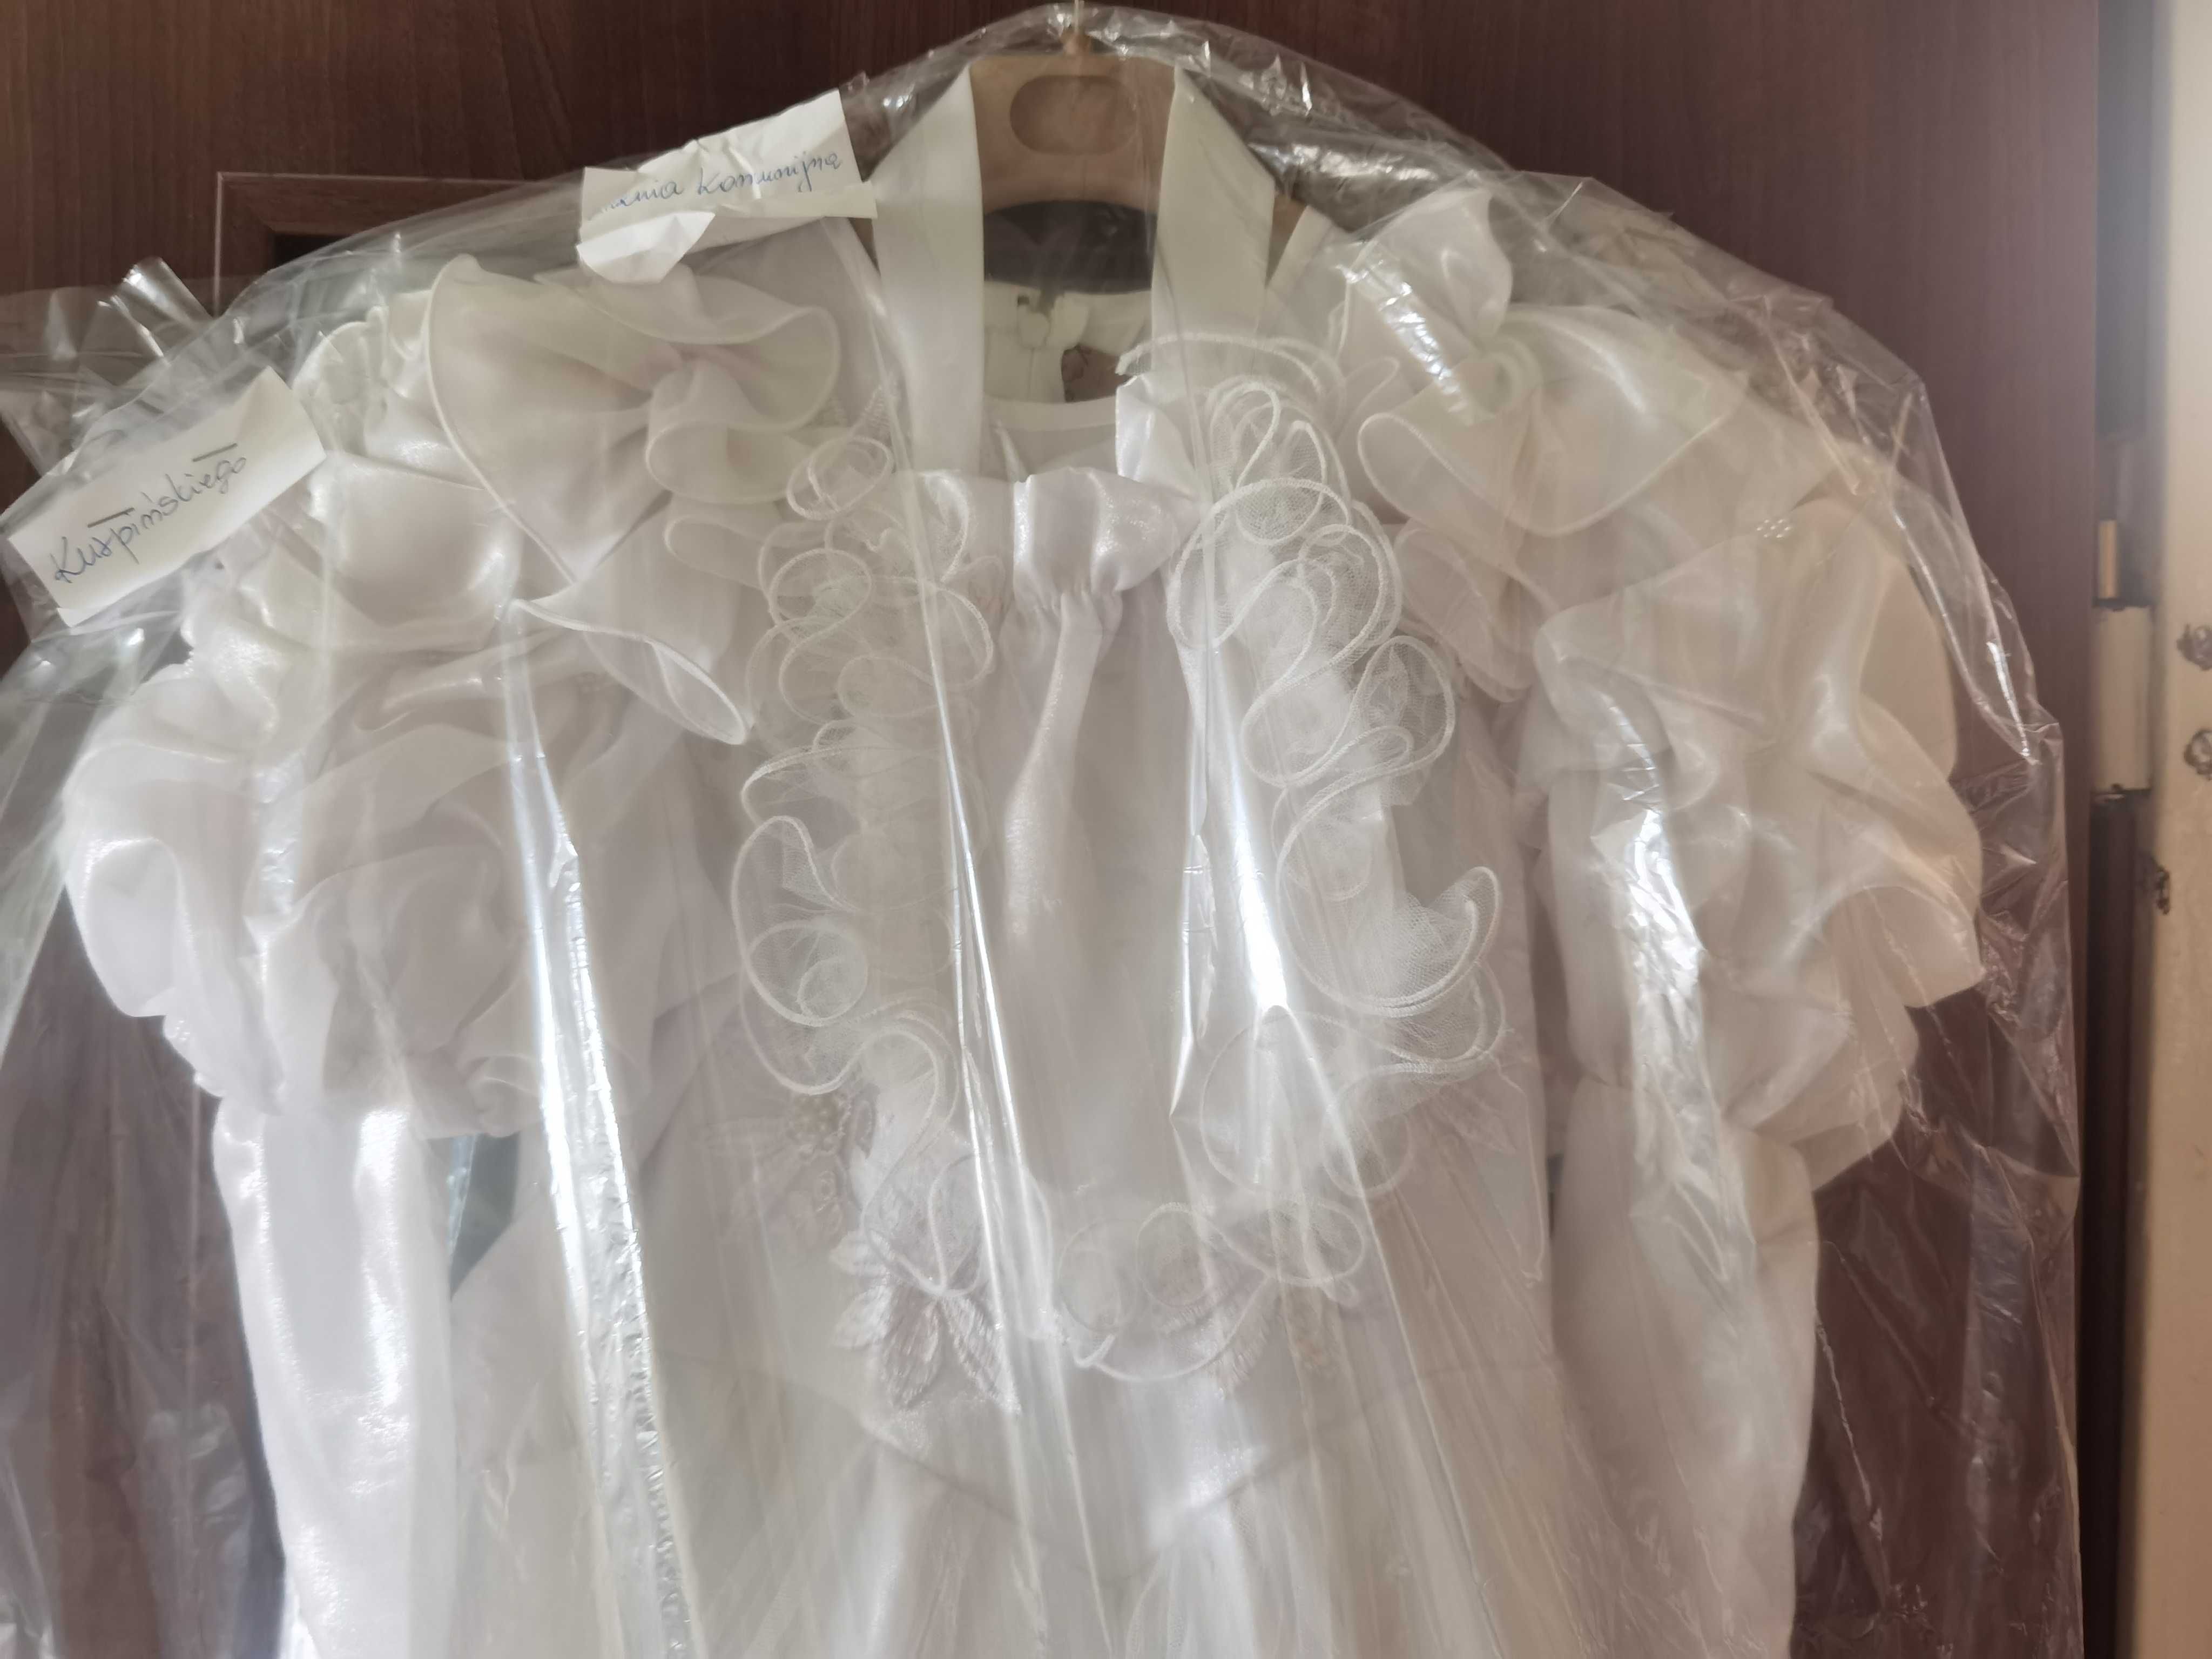 Biała Sukienka komunijna/weselna dla dziewczynki - wyprana :)